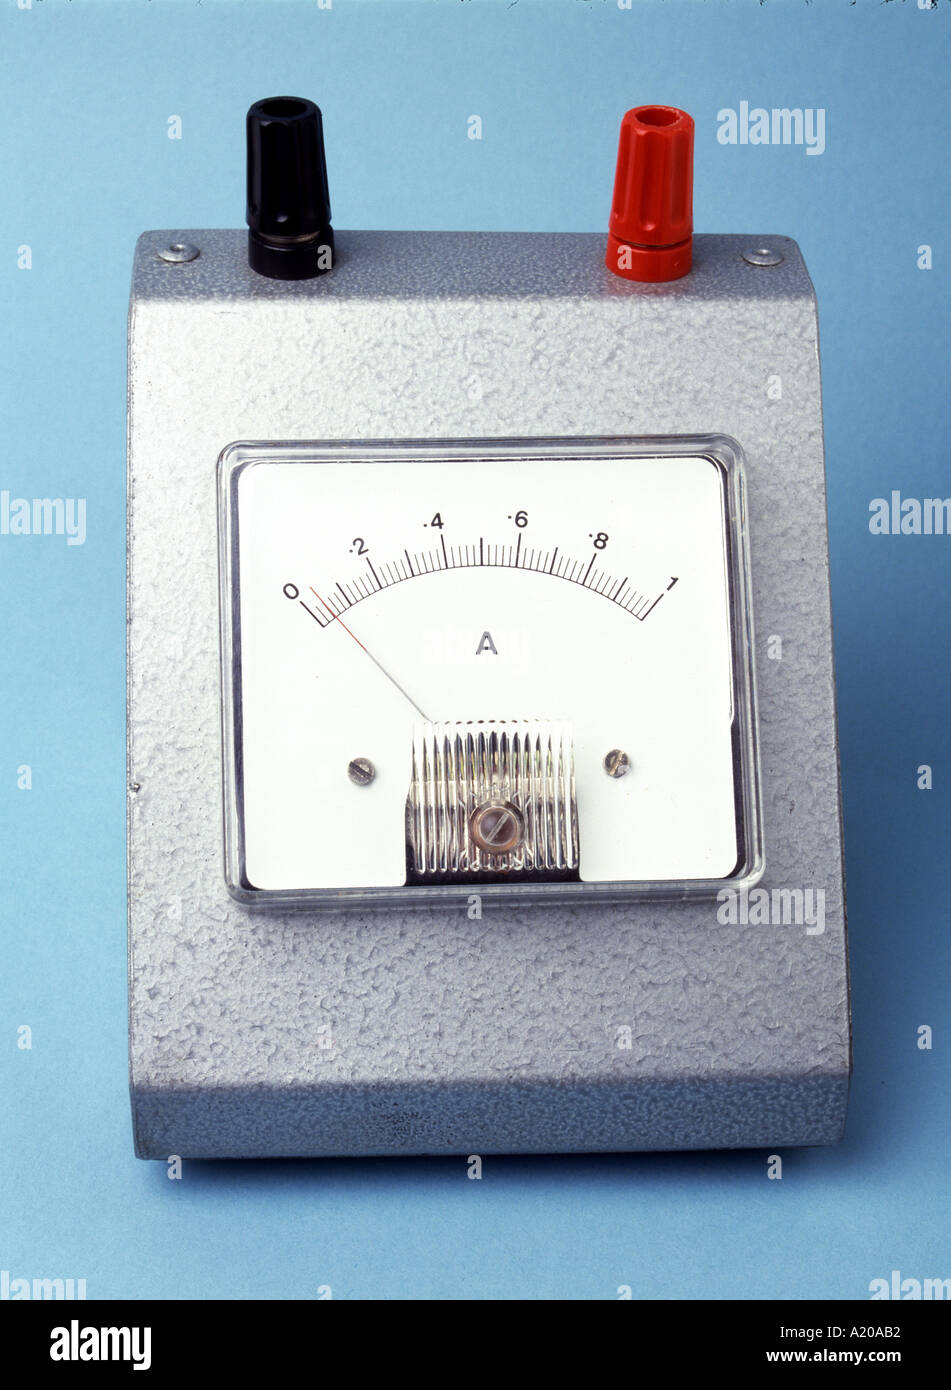 analogue ammeter 0-1 amp needle not on zero Stock Photo